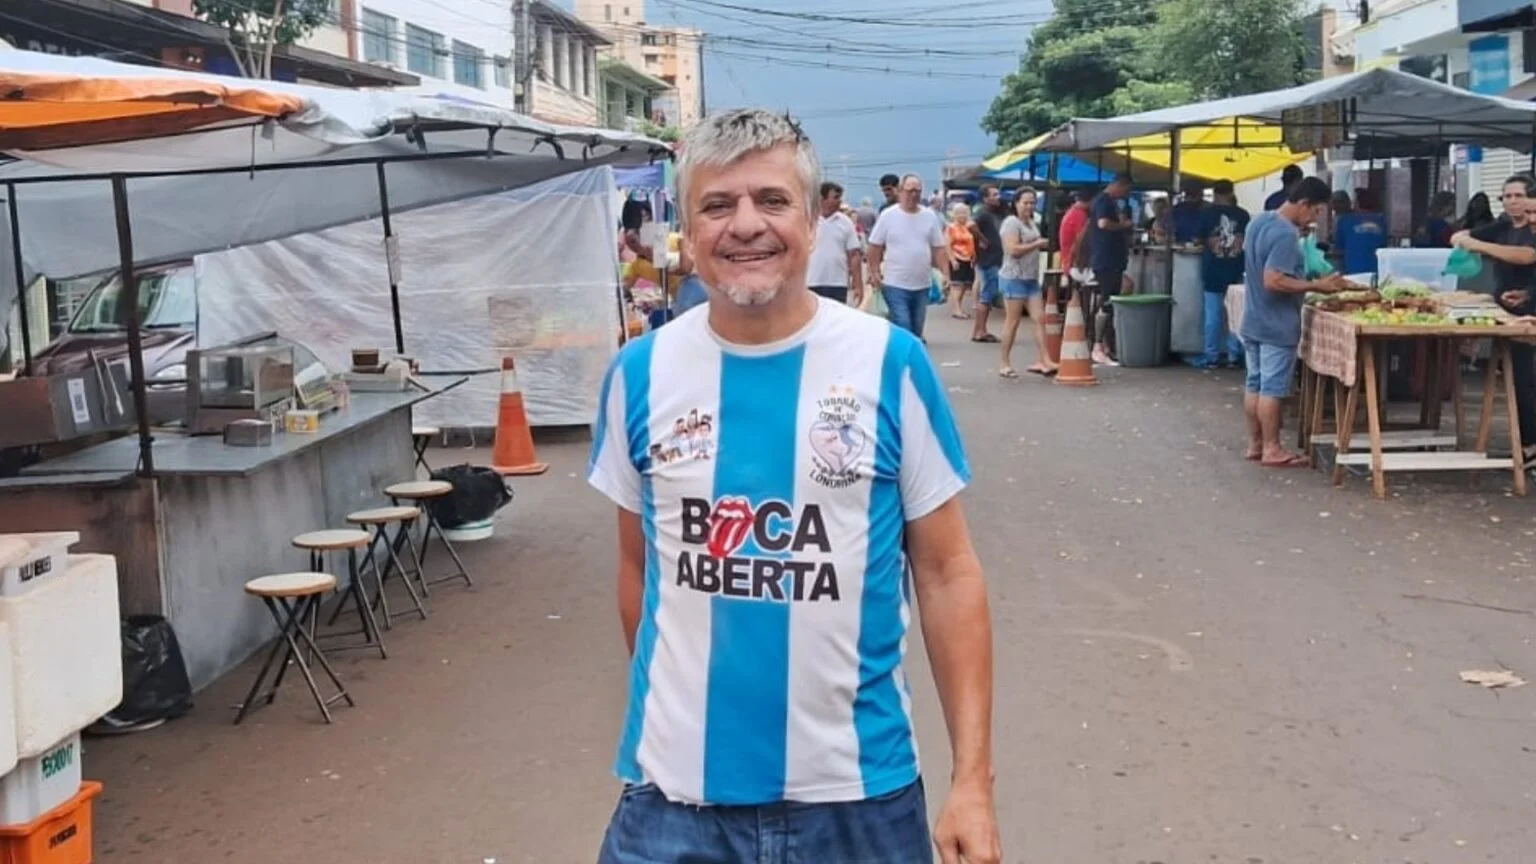 Boca Aberta faz pré-campanha em feira livre em Ibiporã